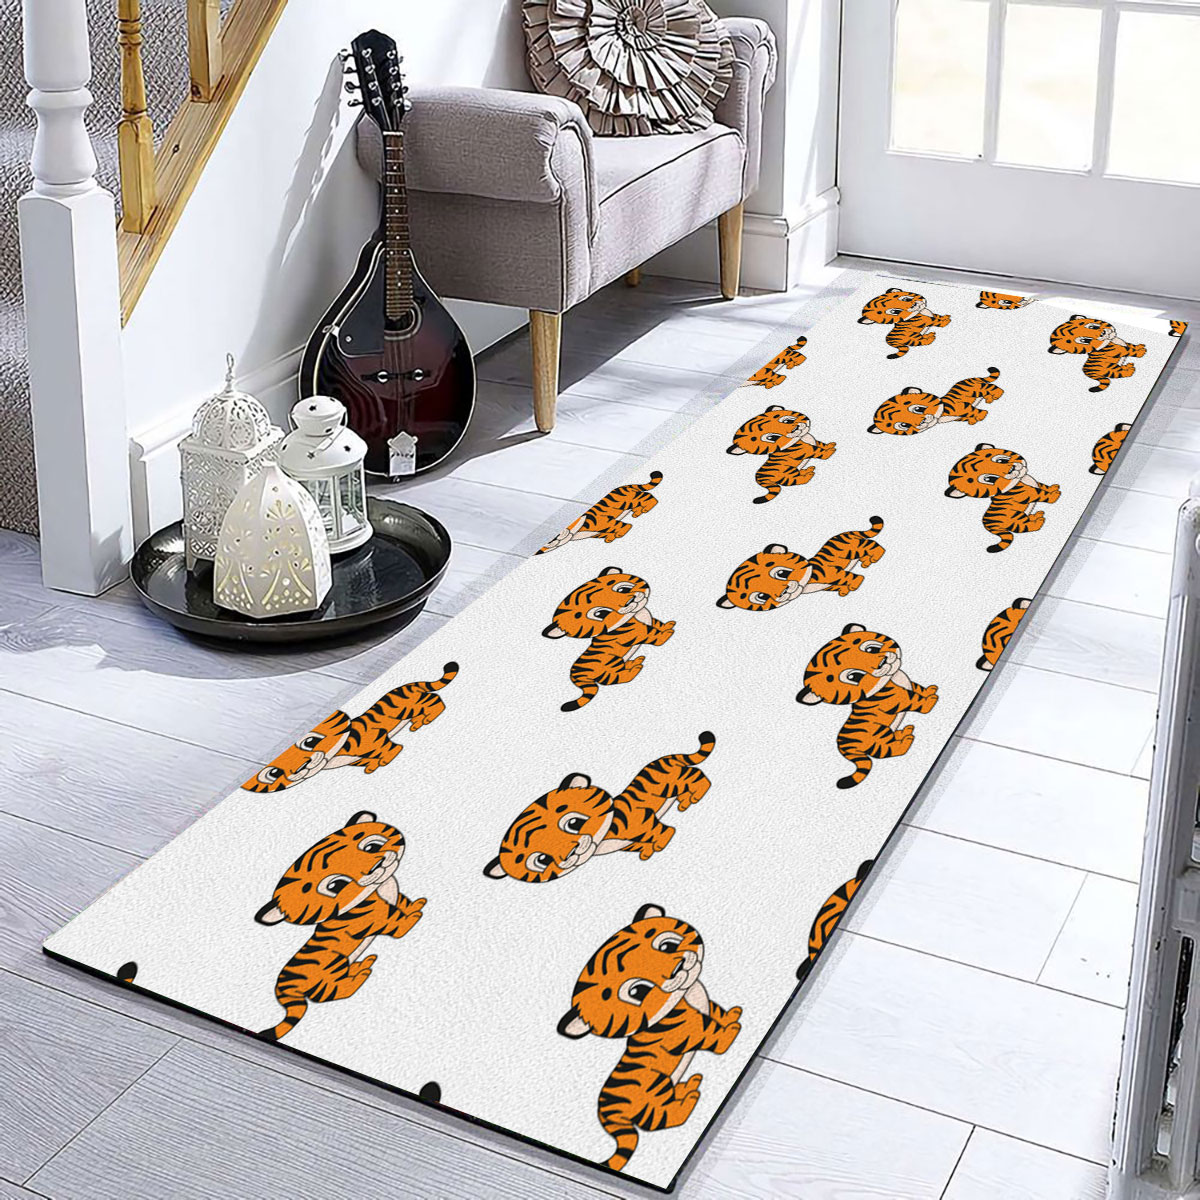 Cute Little Tiger Runner Carpet 6